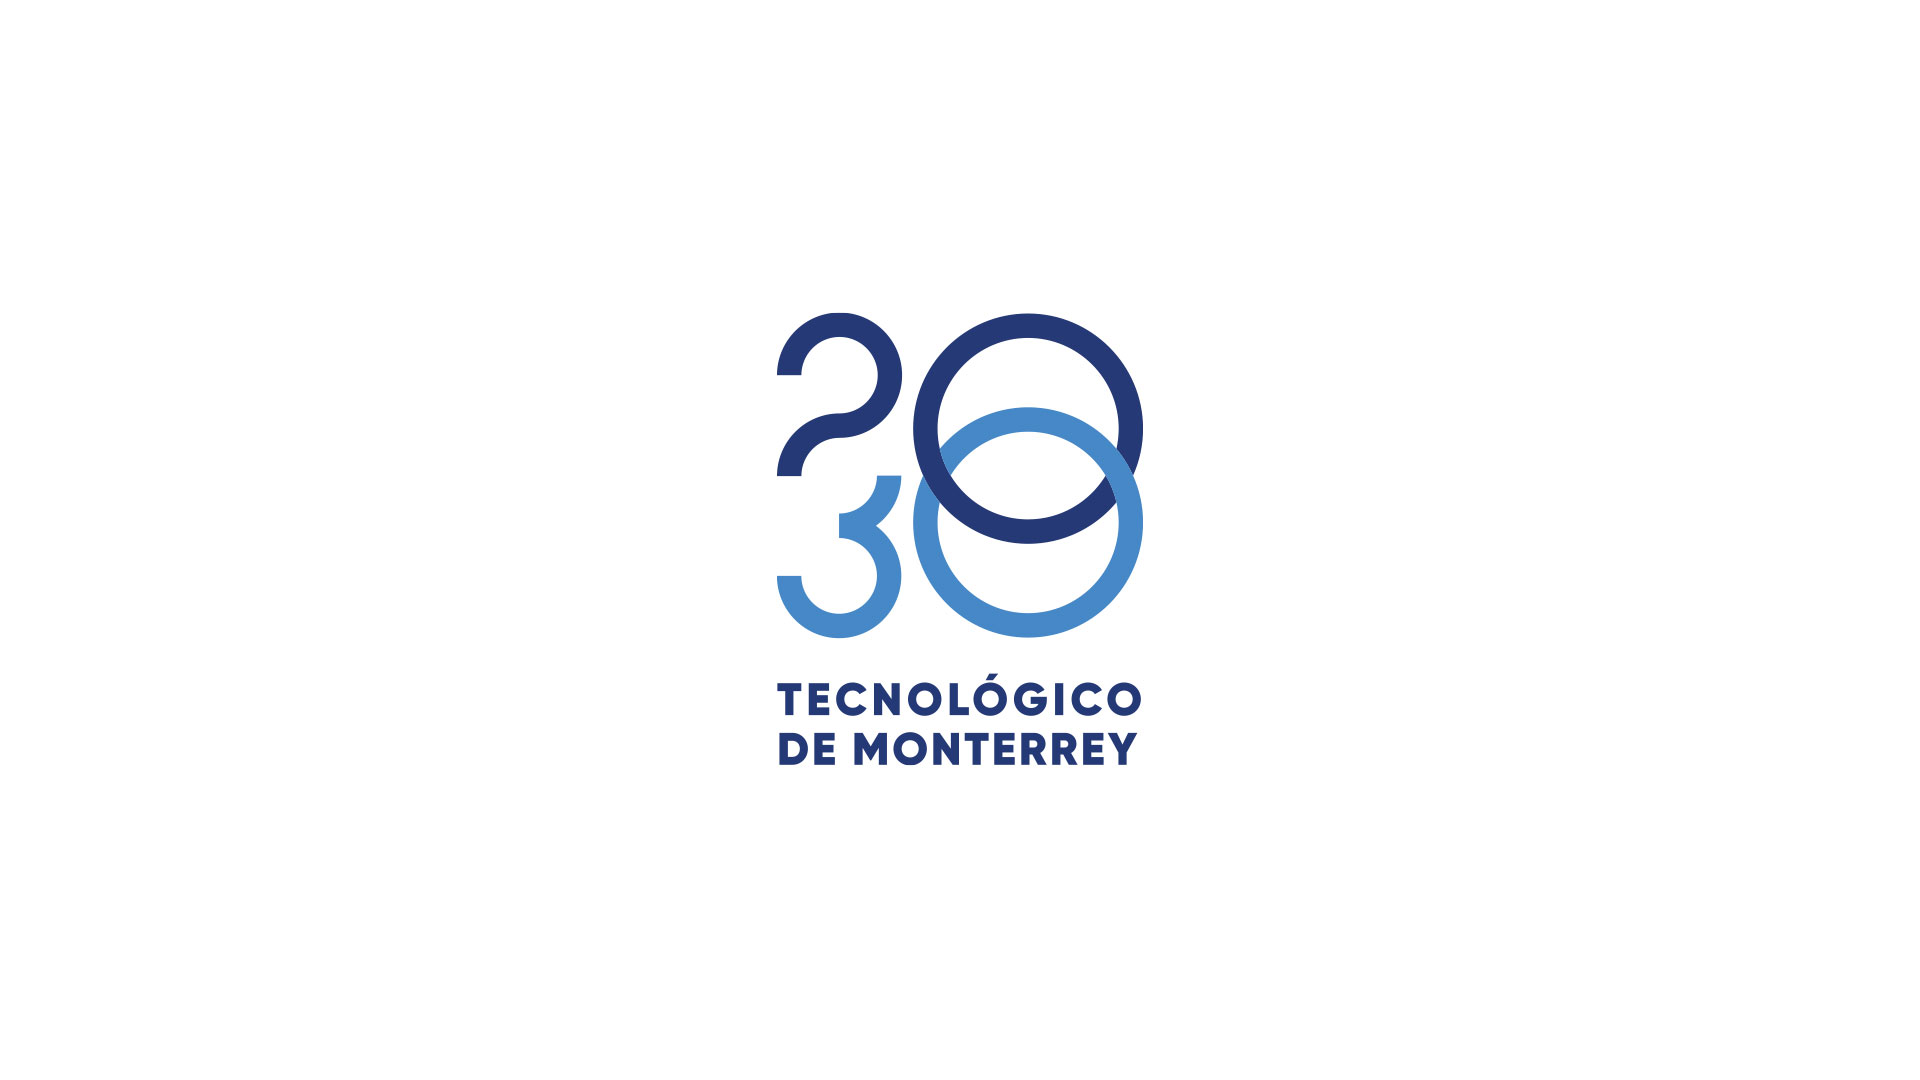 Visión 2030 Tecnológico De Monterrey 6260